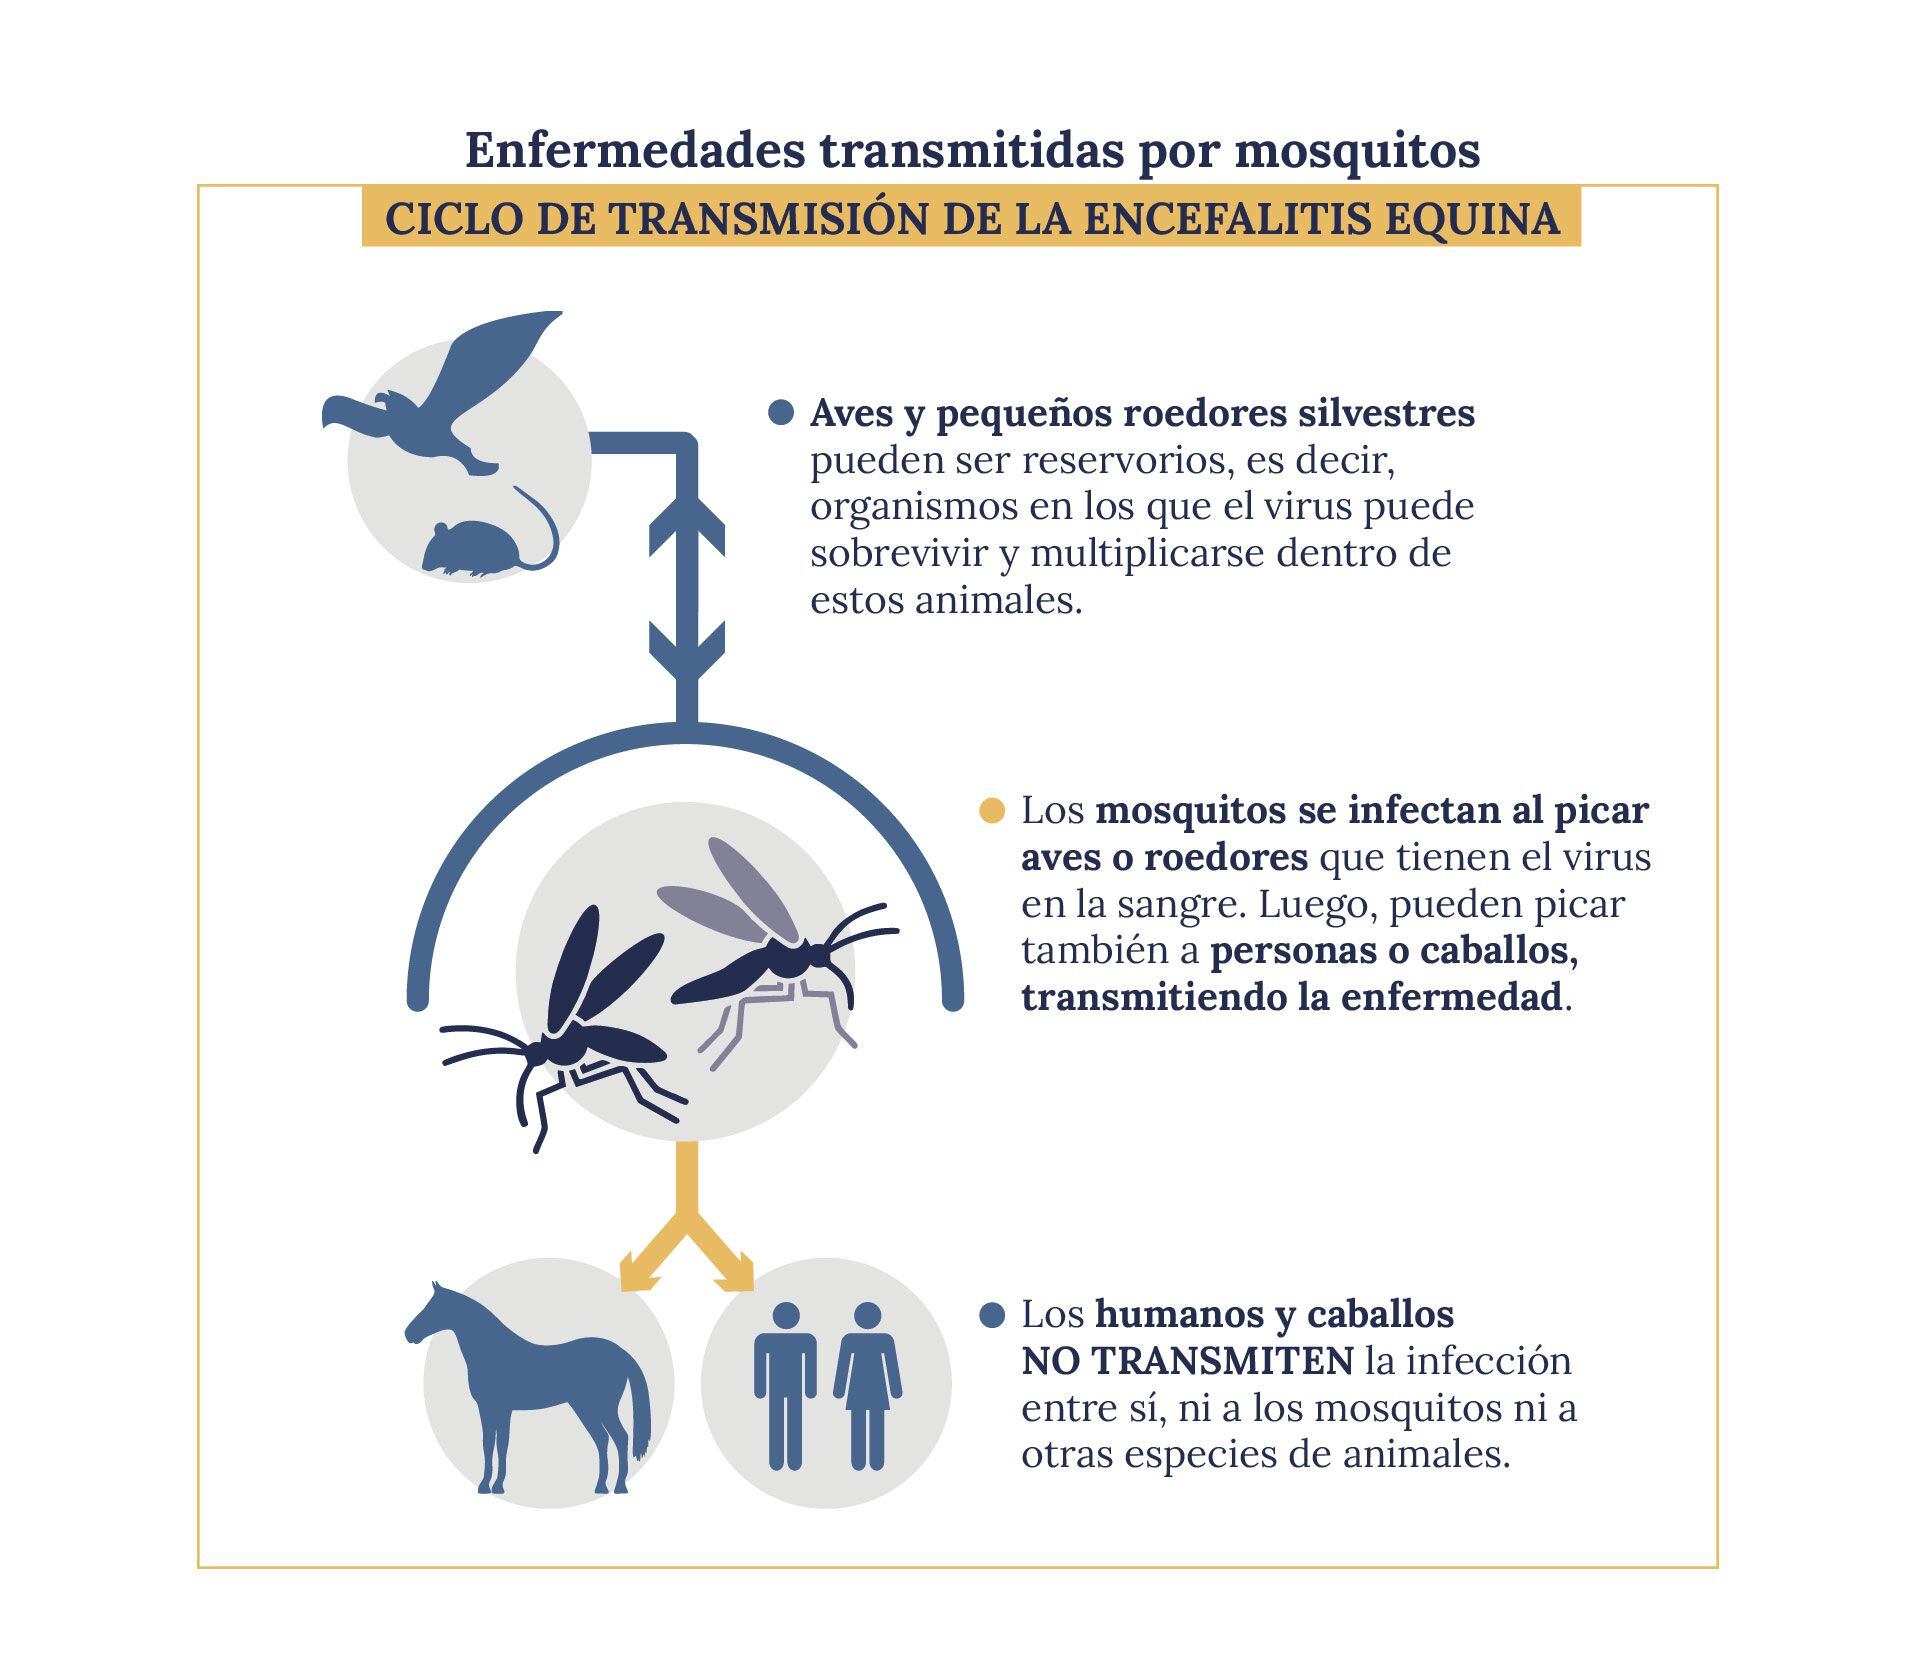 Encefalitis Equina: es una enfermedad causada por un virus que se transmite a través de la picadura de mosquitos infectados.